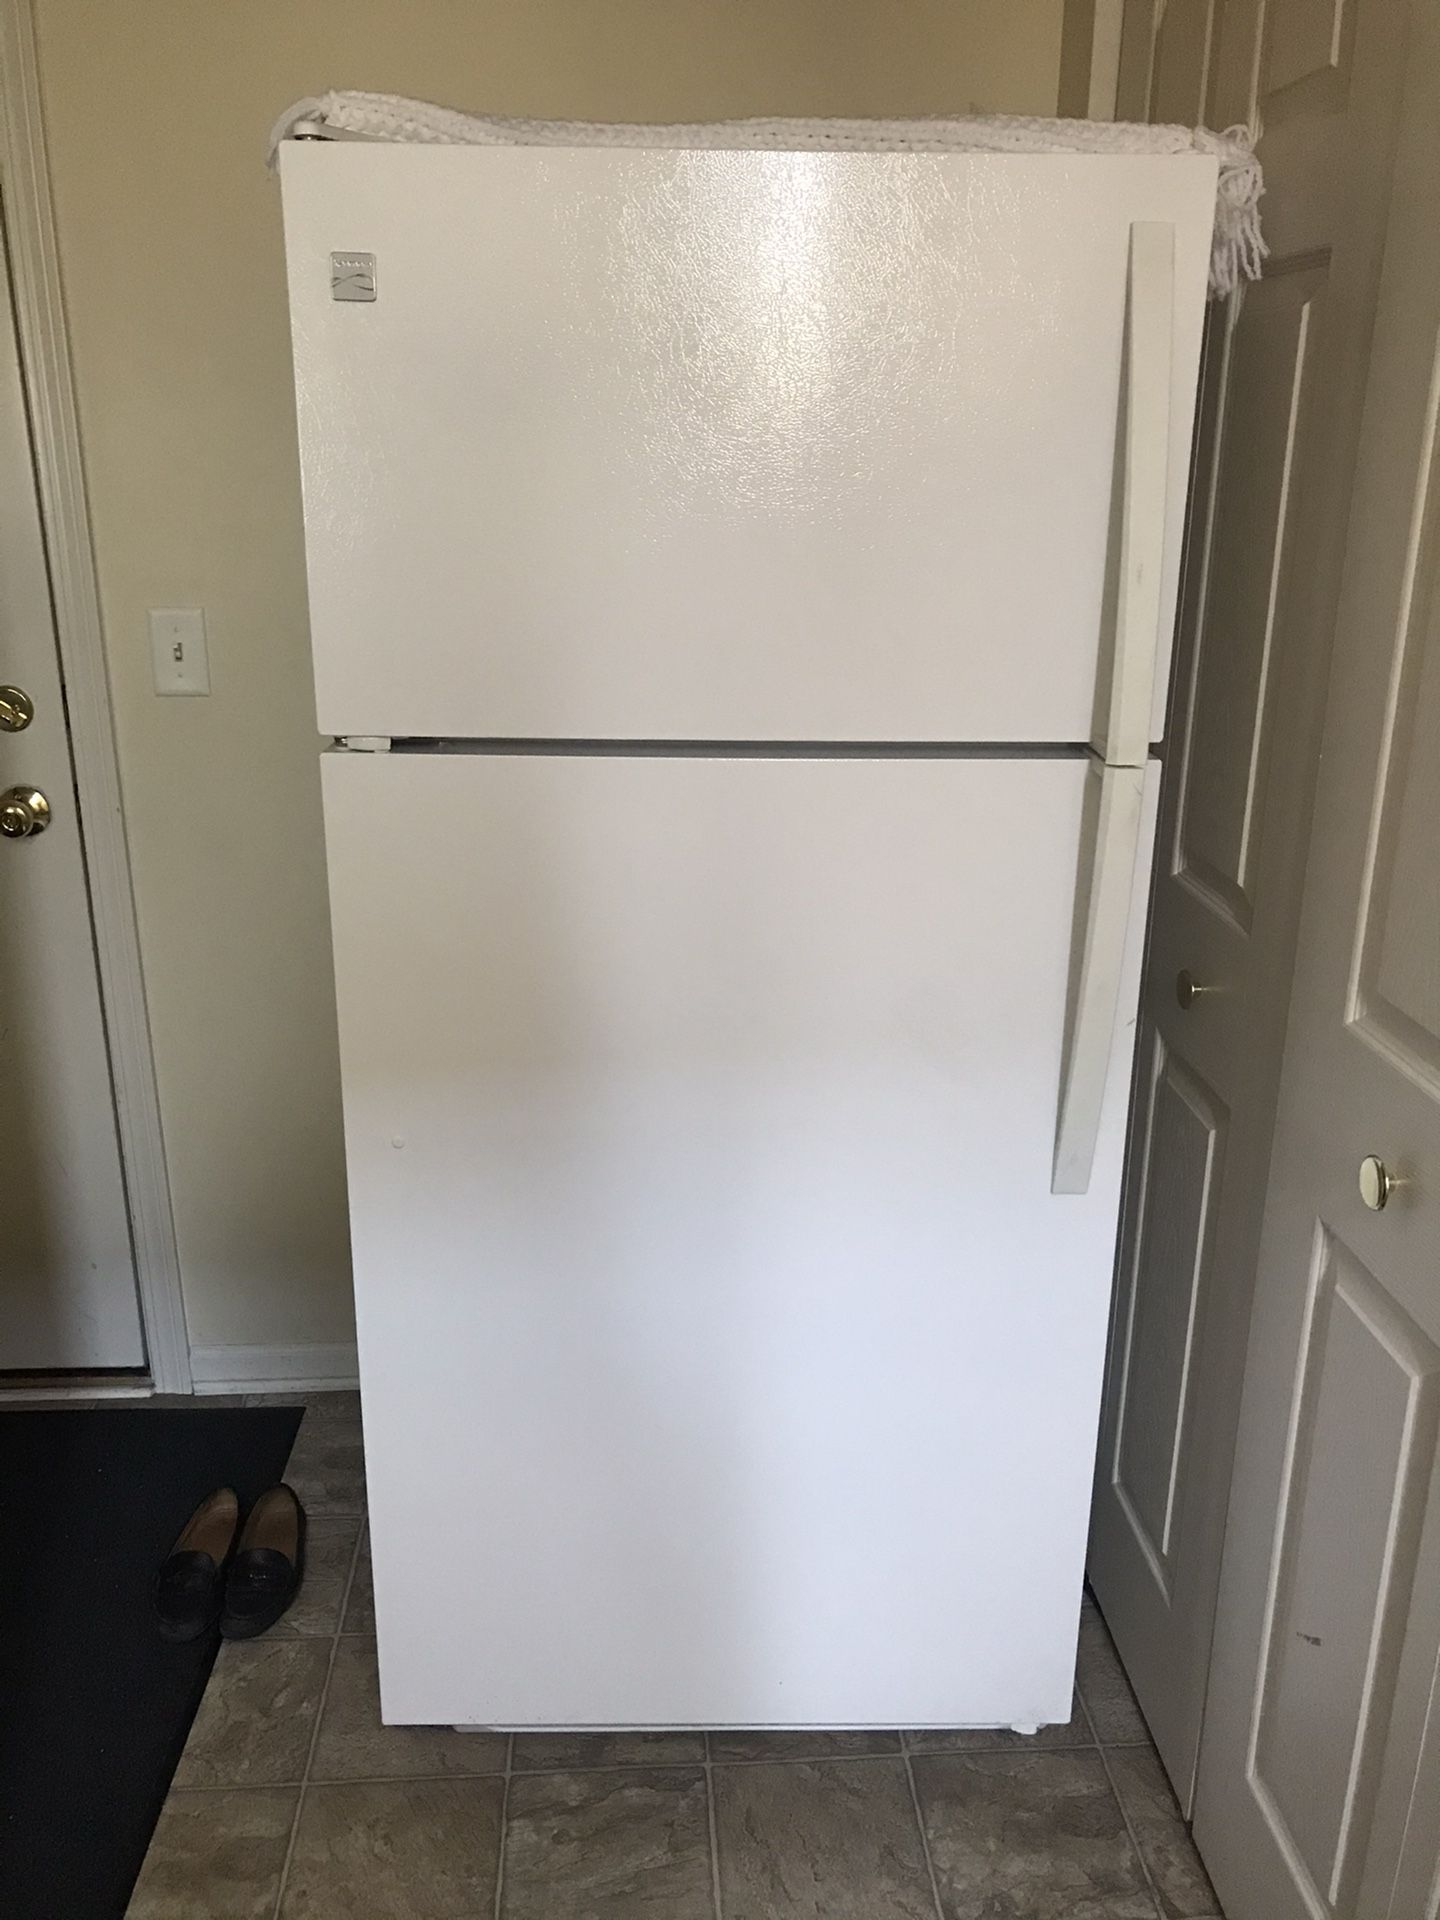 Excellent condition refrigerator